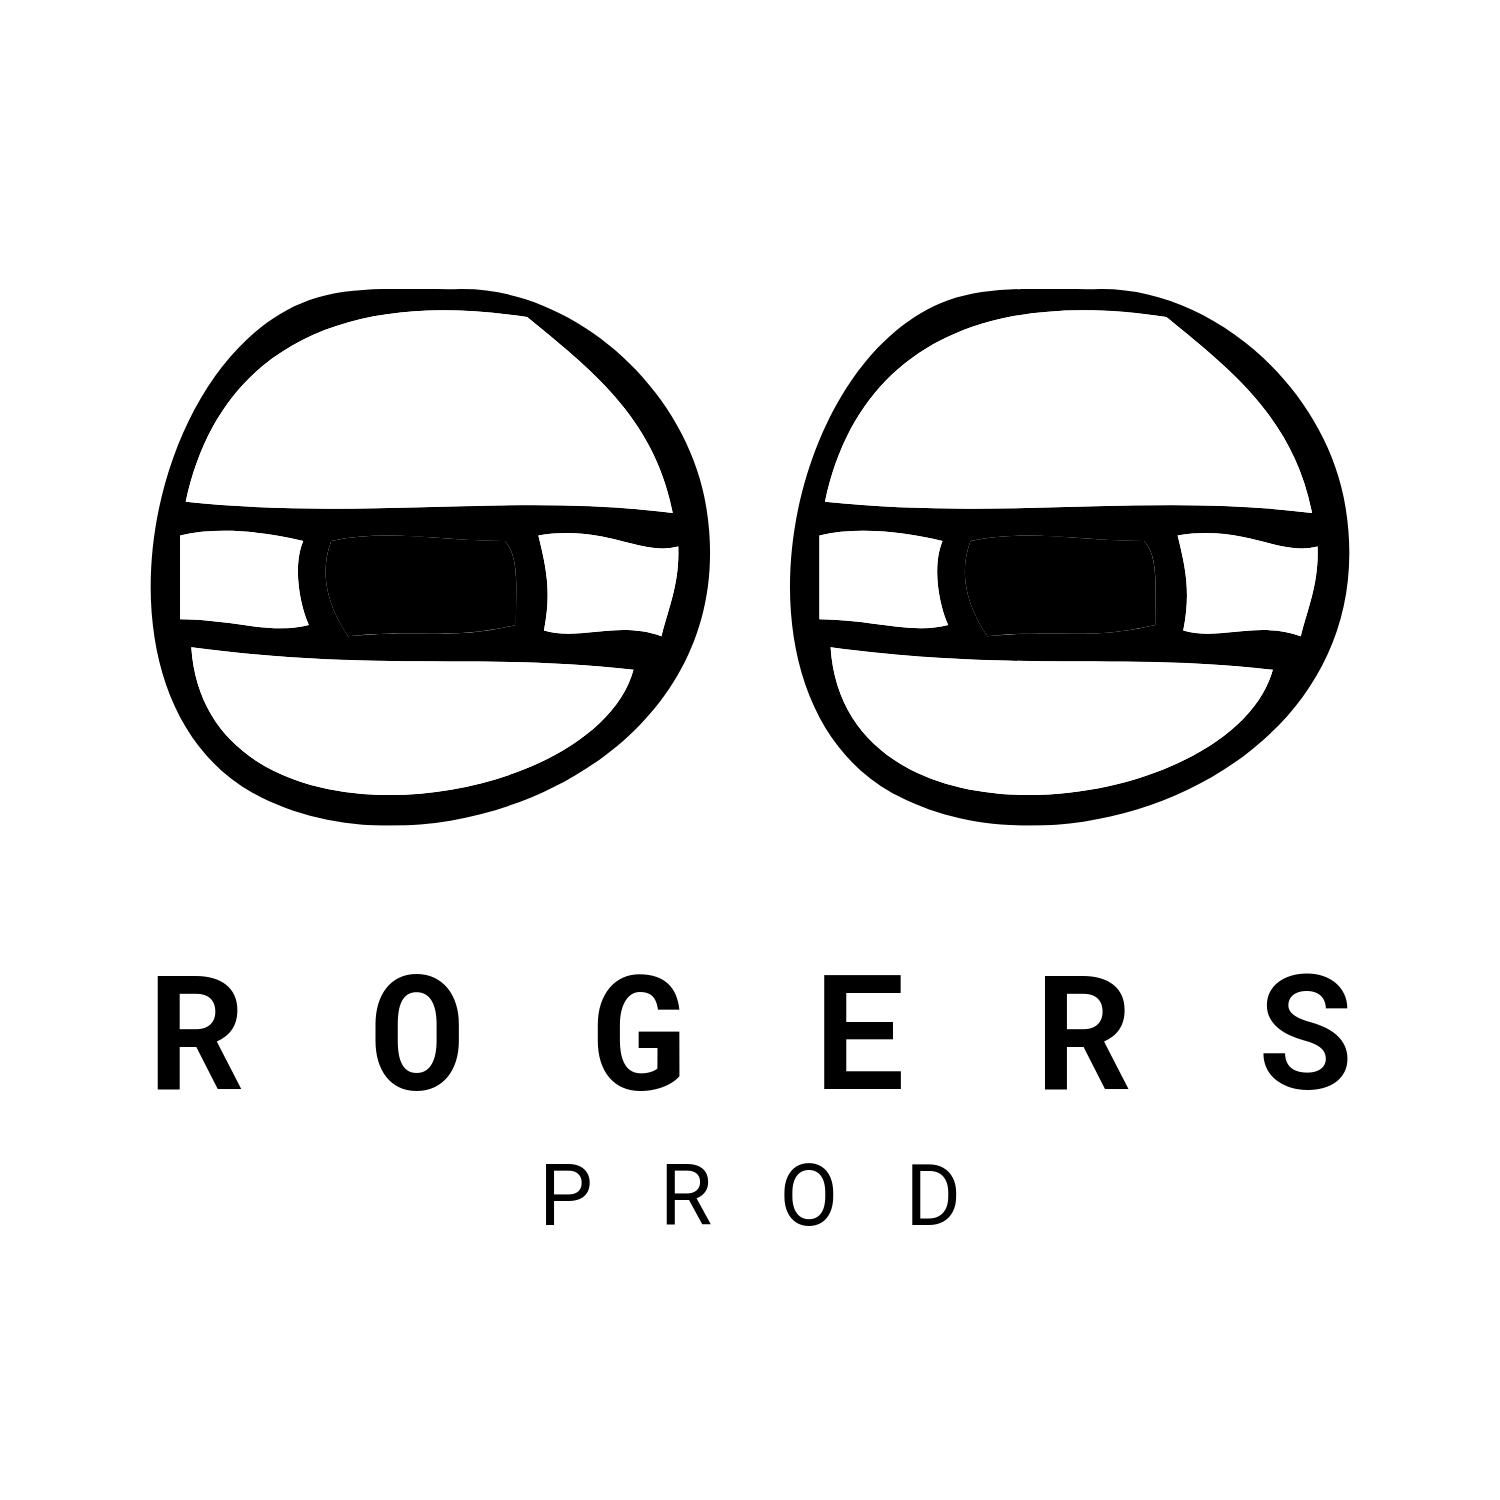 Rogers Prod